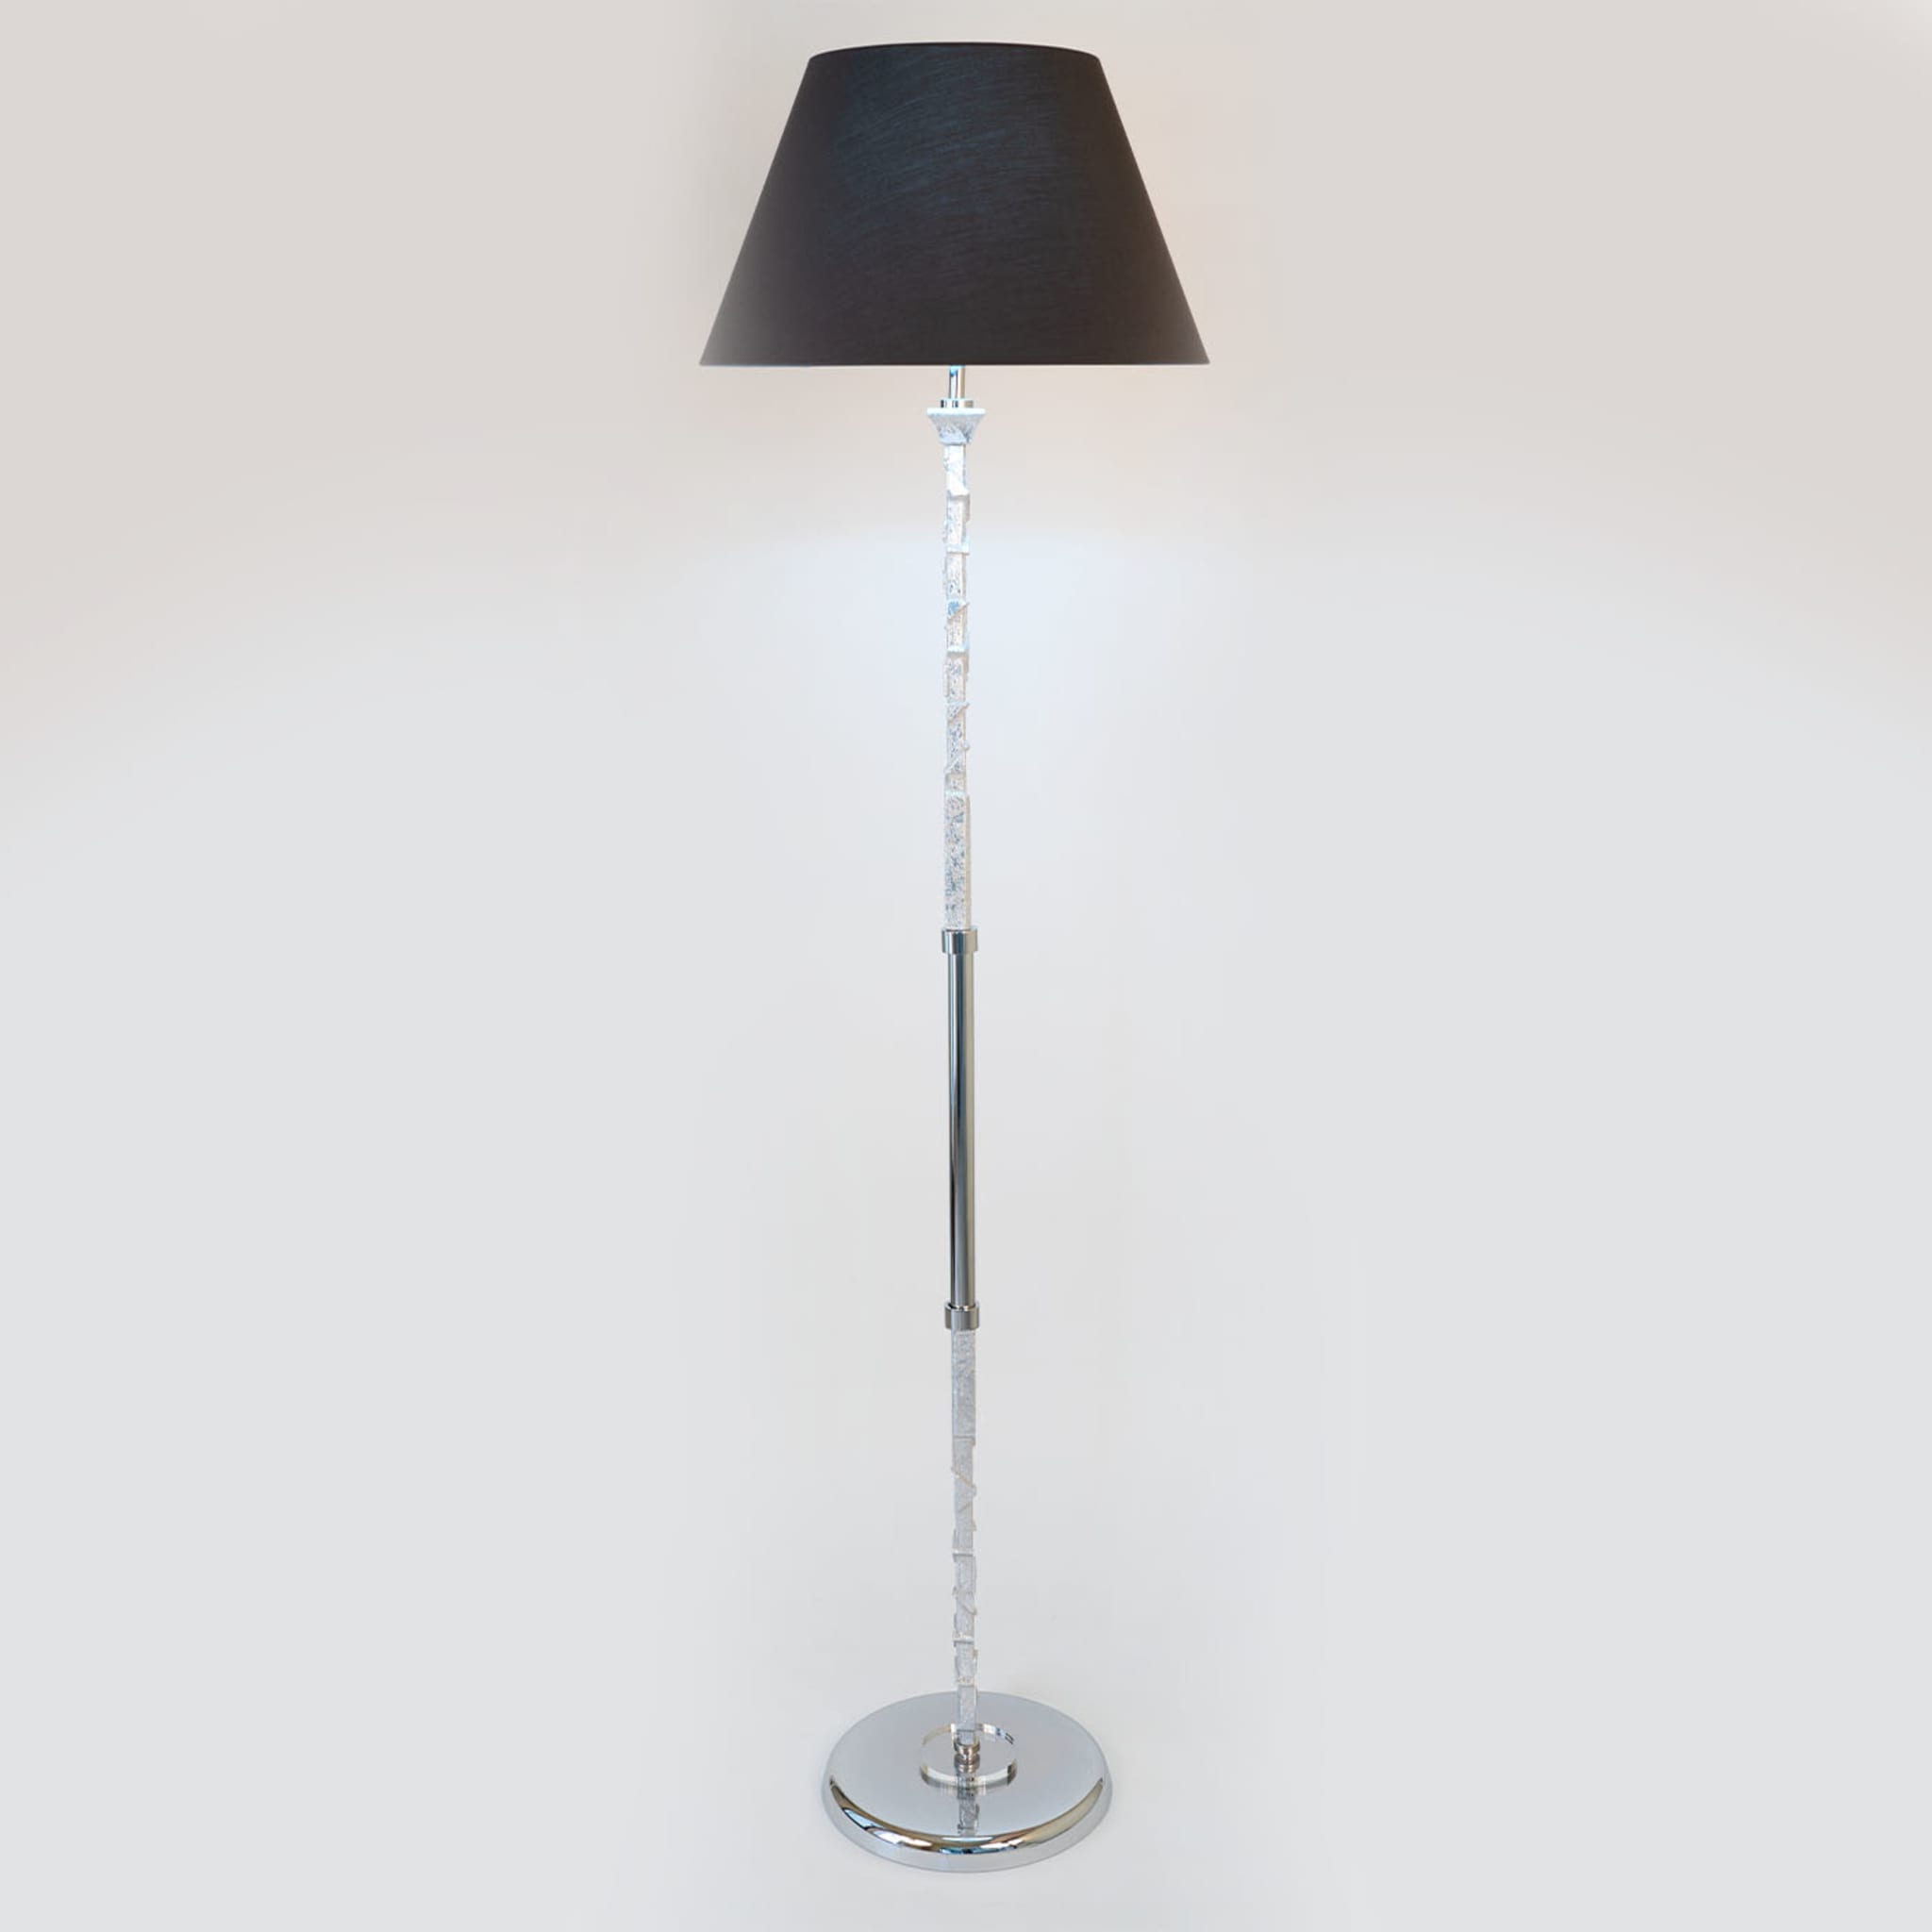 Anthracite-Gray Chromed Floor Lamp - Alternative view 1